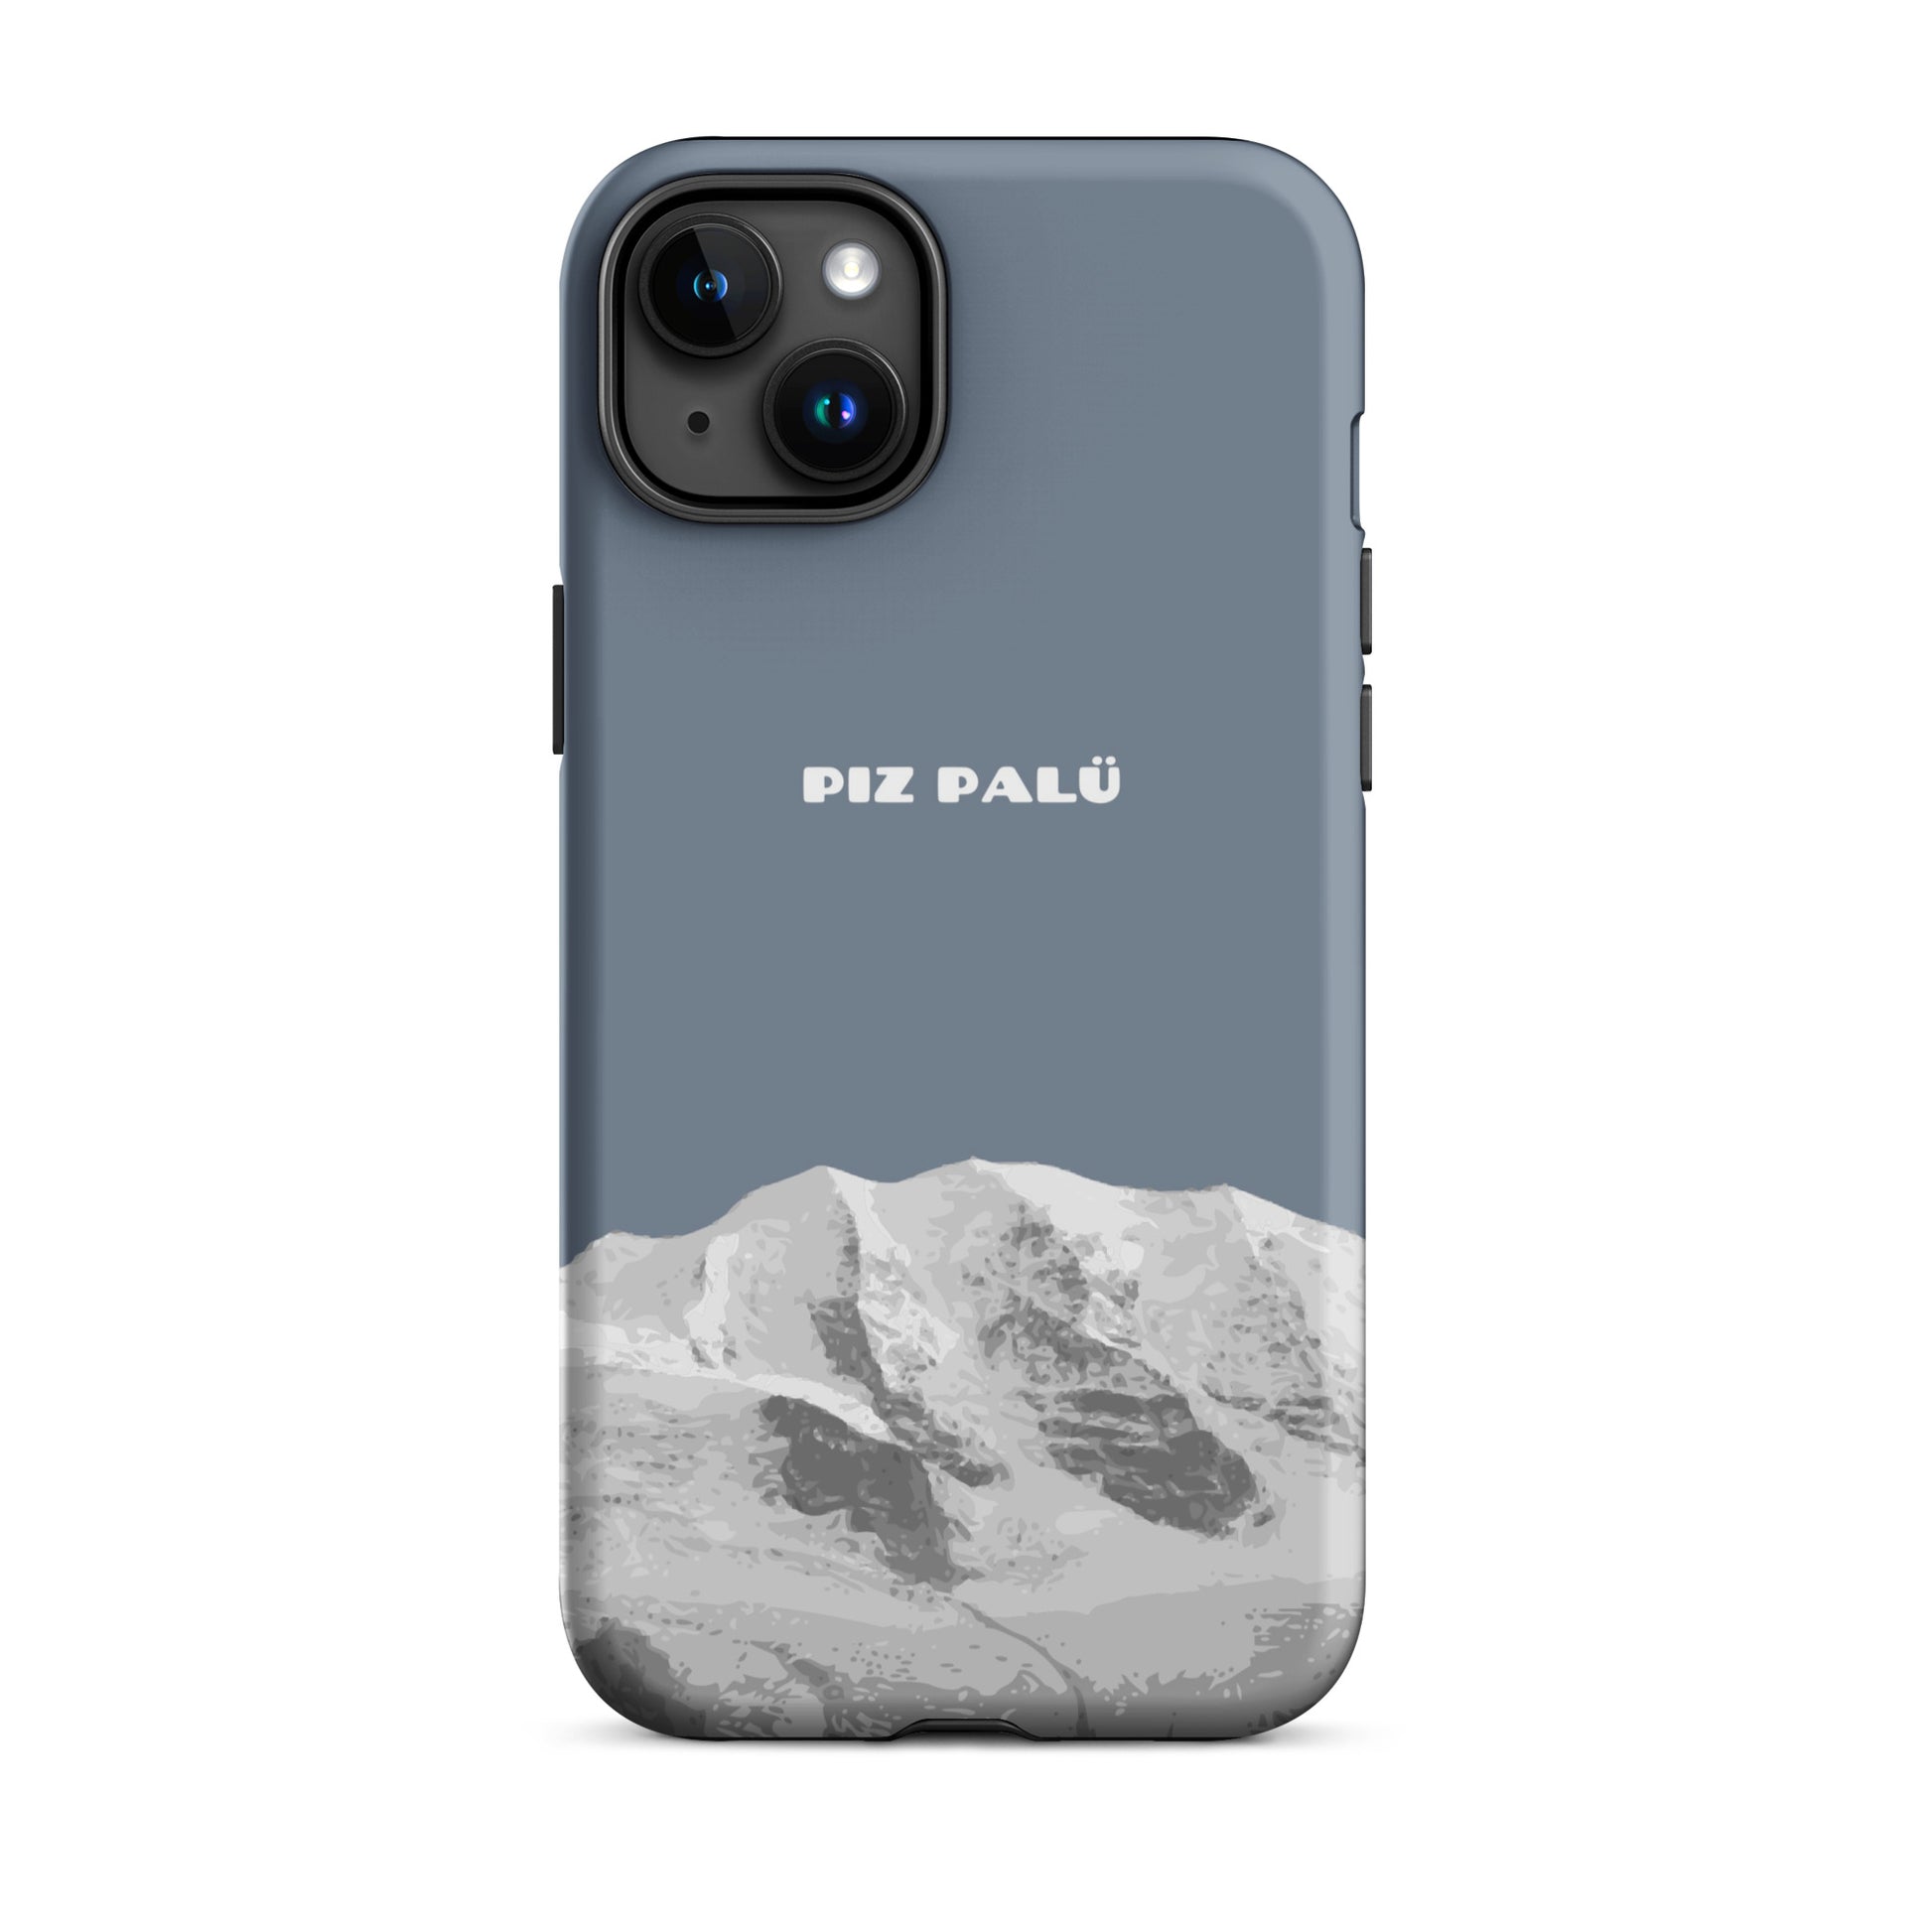 Hülle für das iPhone 15 Plus von Apple in der Farbe Schiefergrau, dass den Piz Palü in Graubünden zeigt.